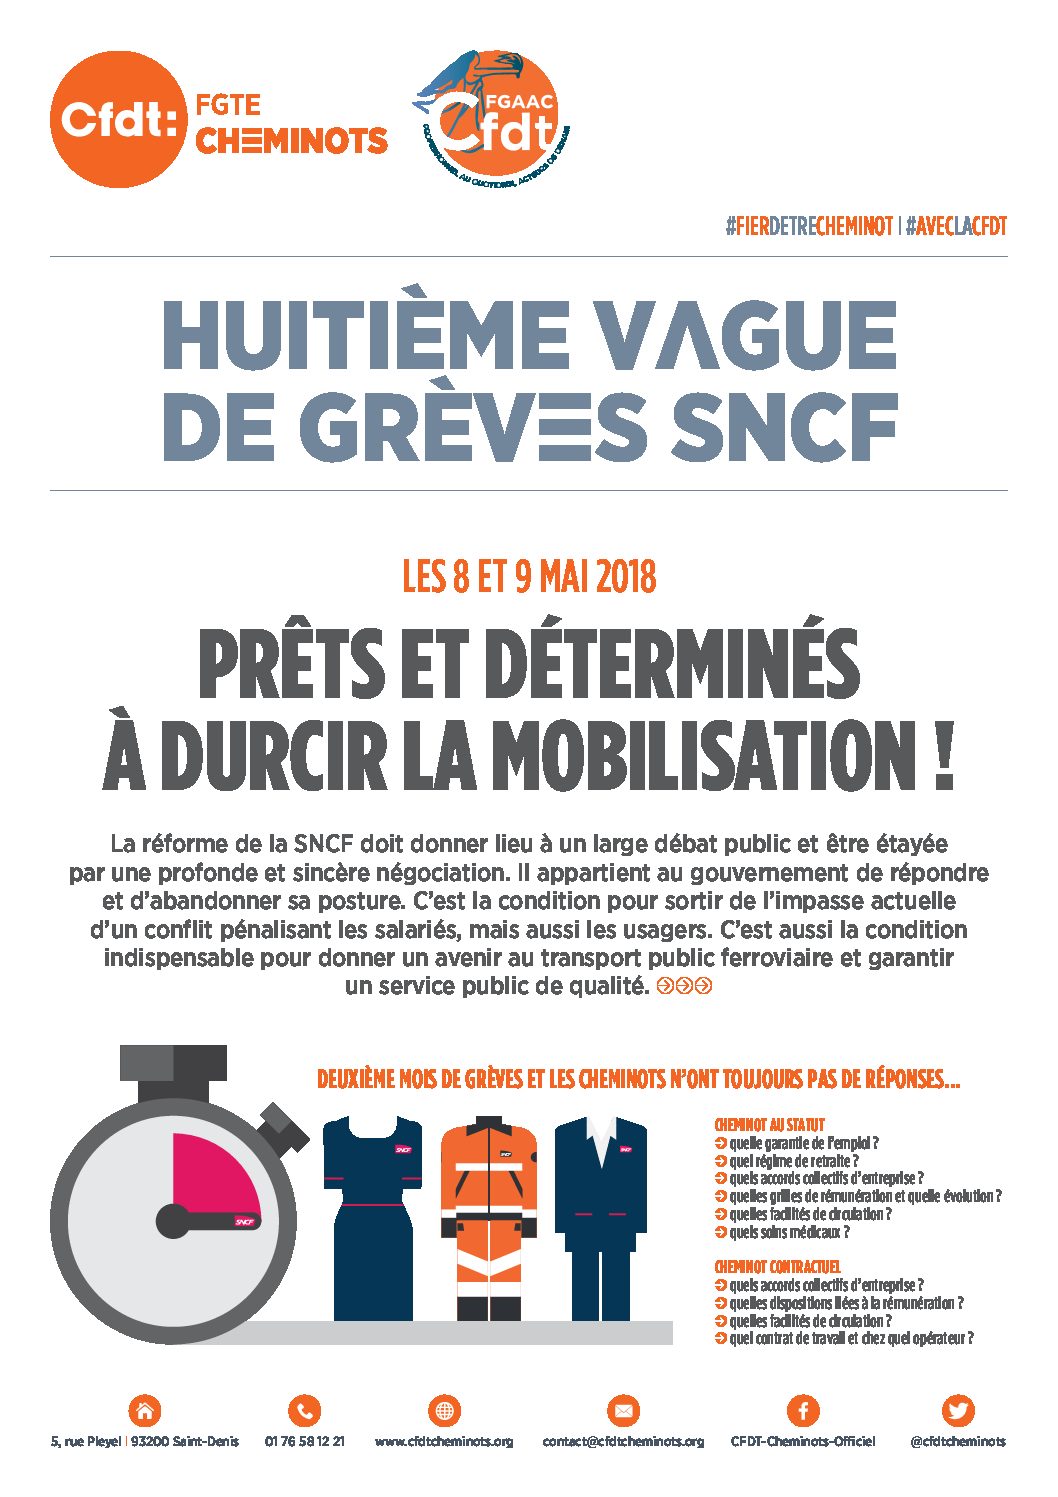 HUITIÈME VAGUE DE GRÈVES SNCF